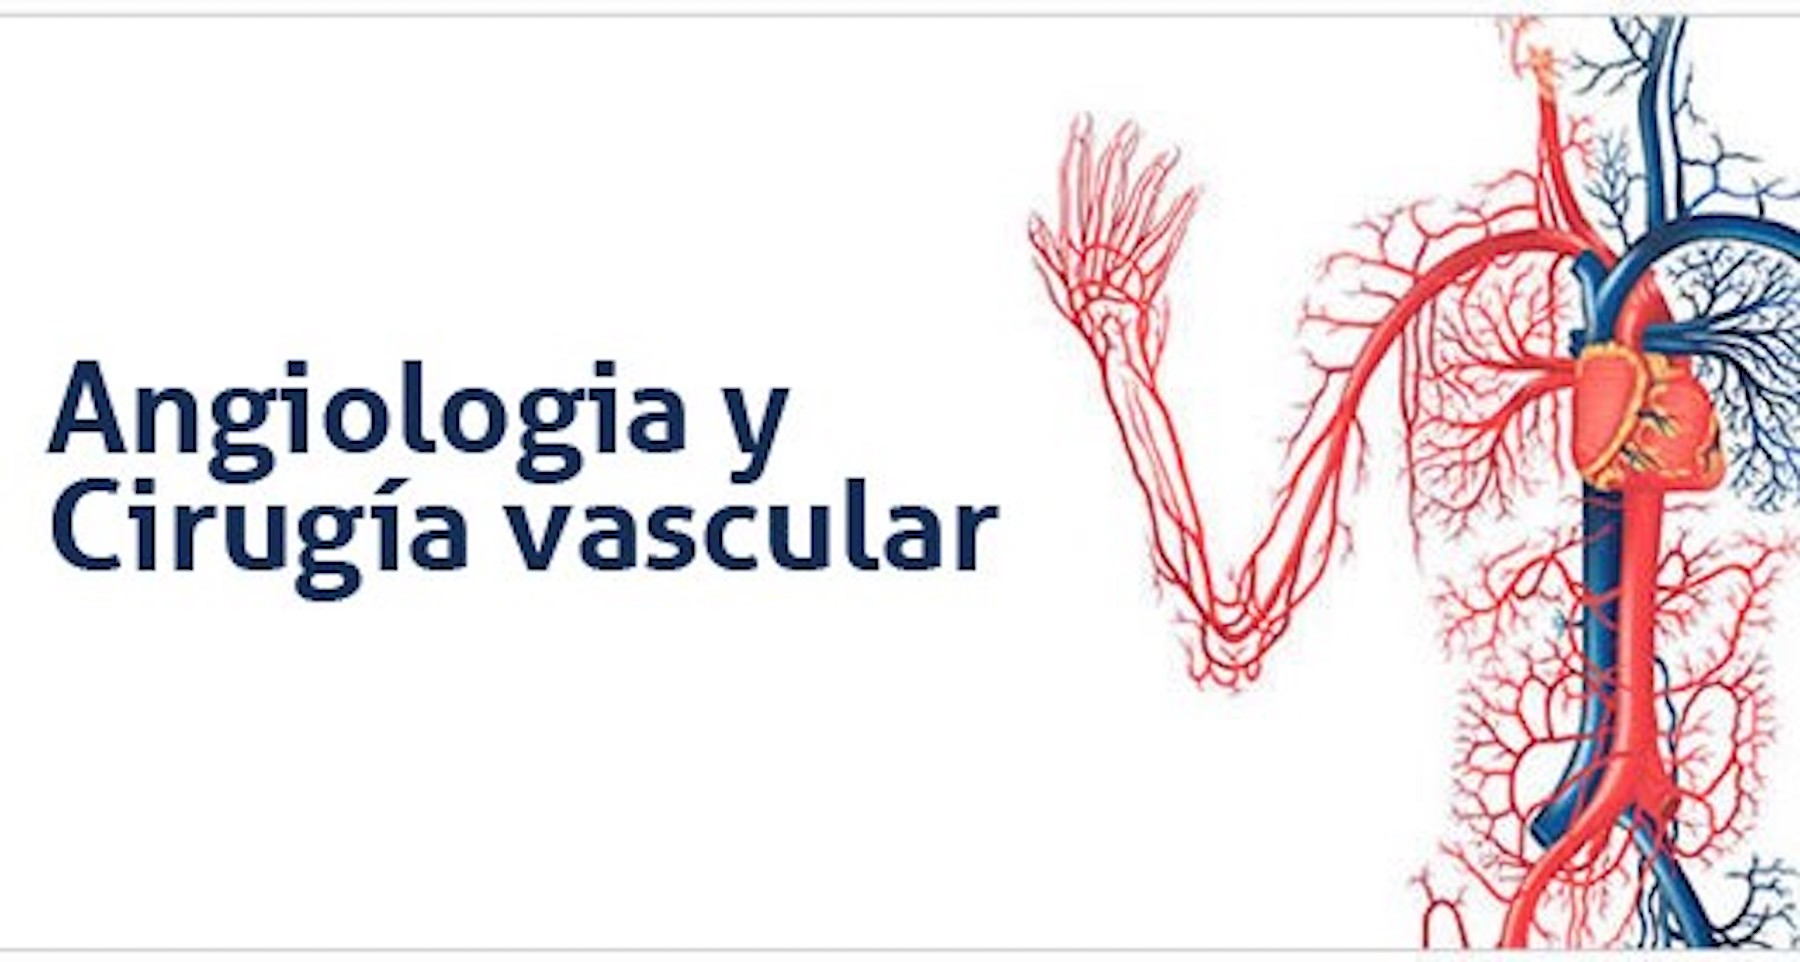 angiologia y cirugia vascular